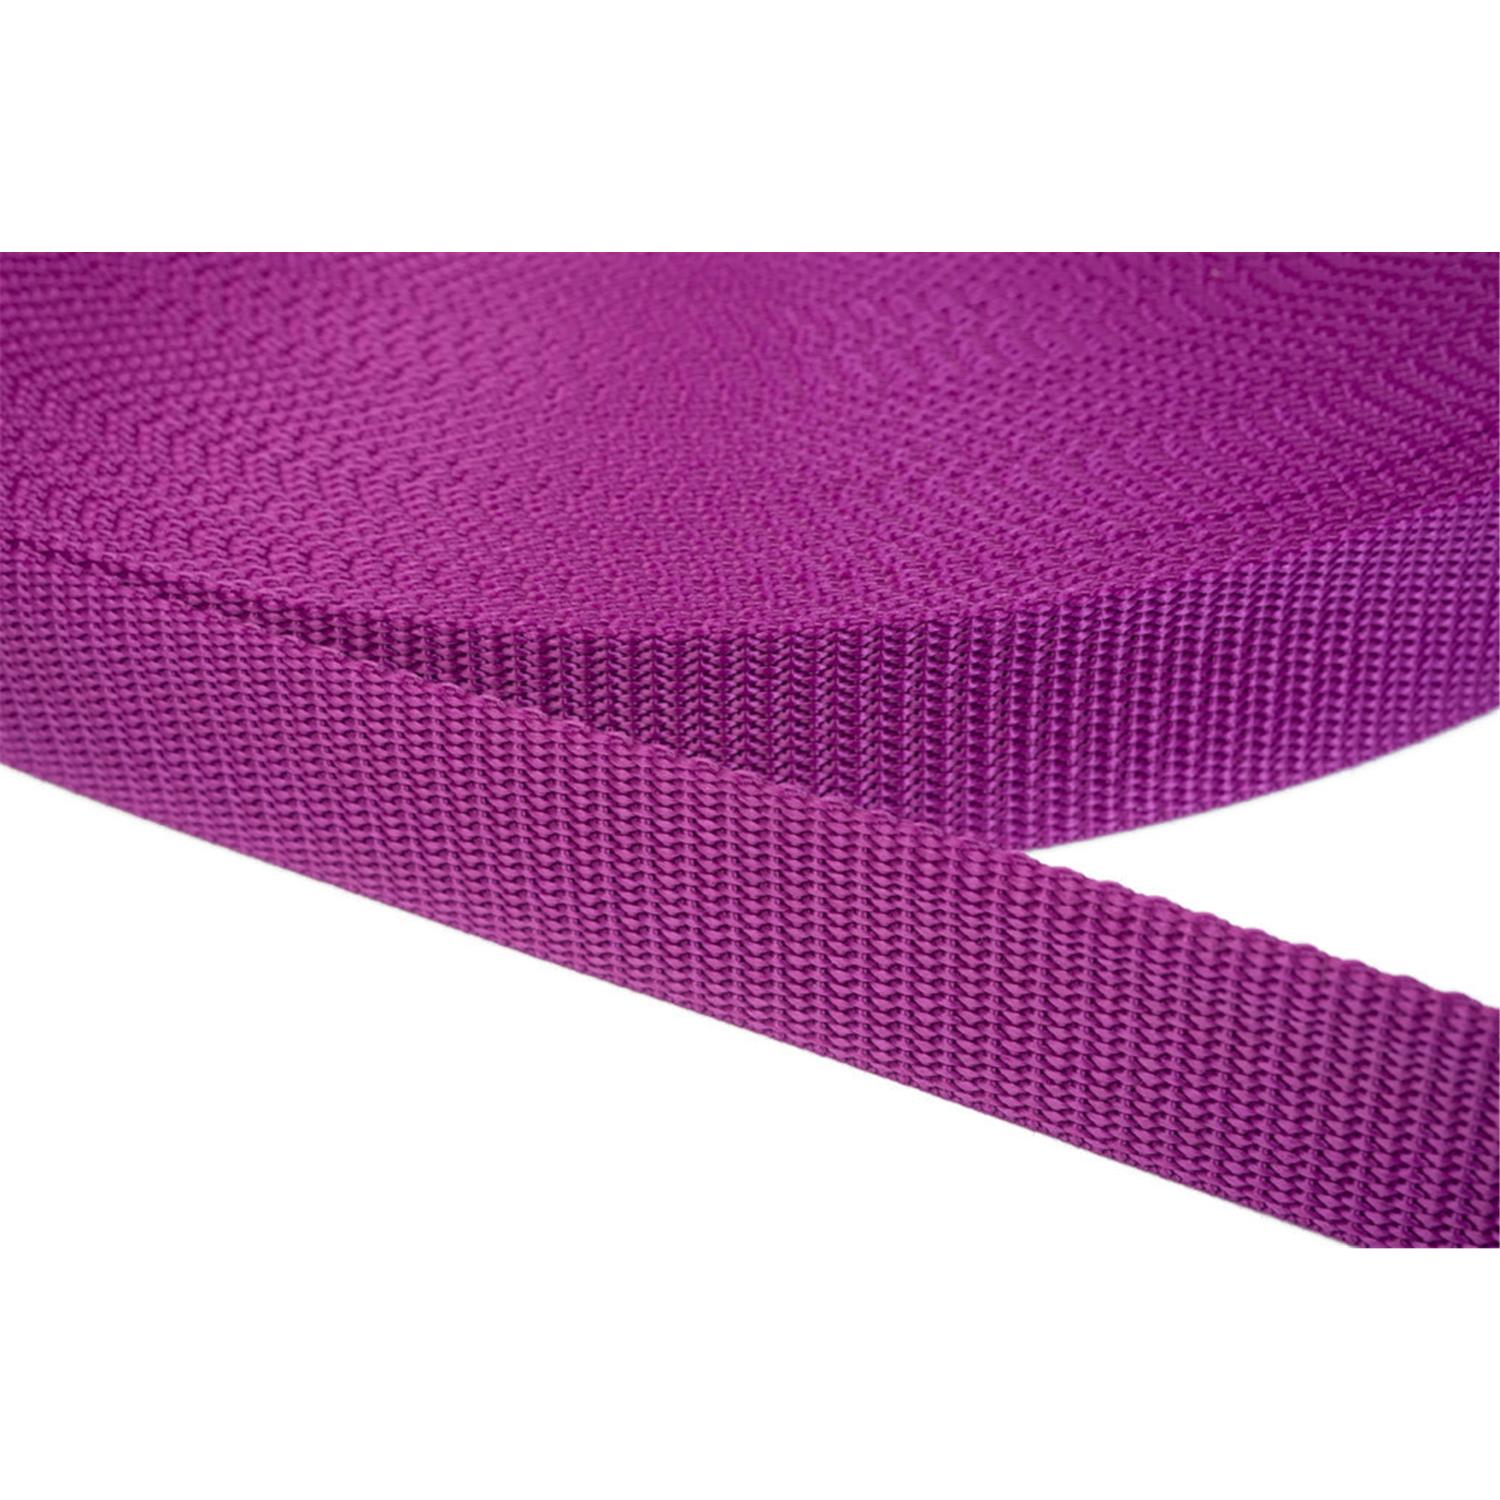 Gurtband 50mm breit aus Polypropylen in 41 Farben 22 - violettrot 12 Meter